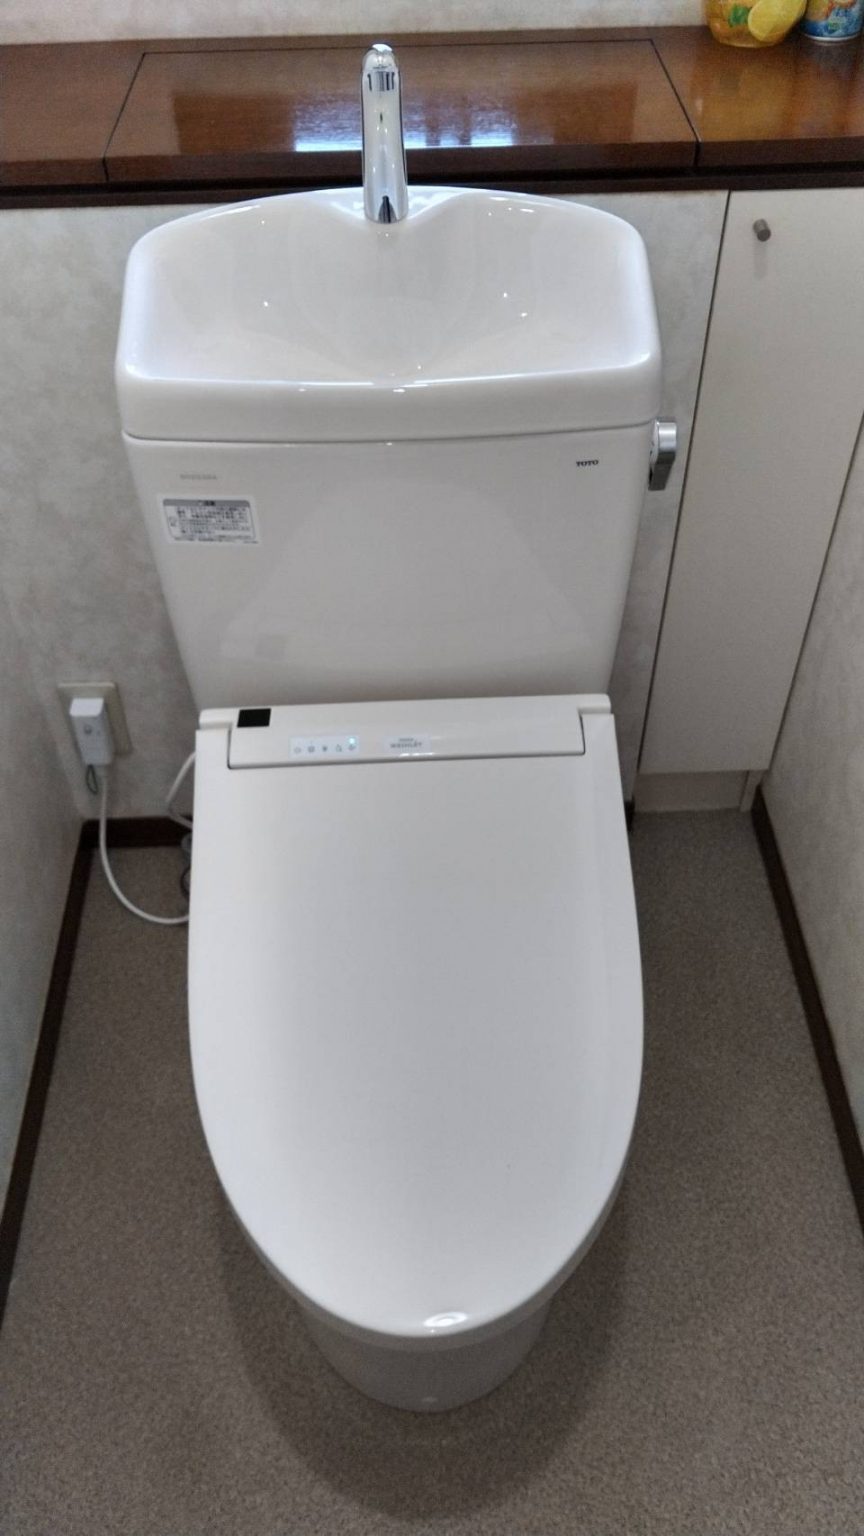 スタッフの修理報告 静岡のトイレつまり・水漏れ修理・水のトラブル しずおか水道職人 Part 2